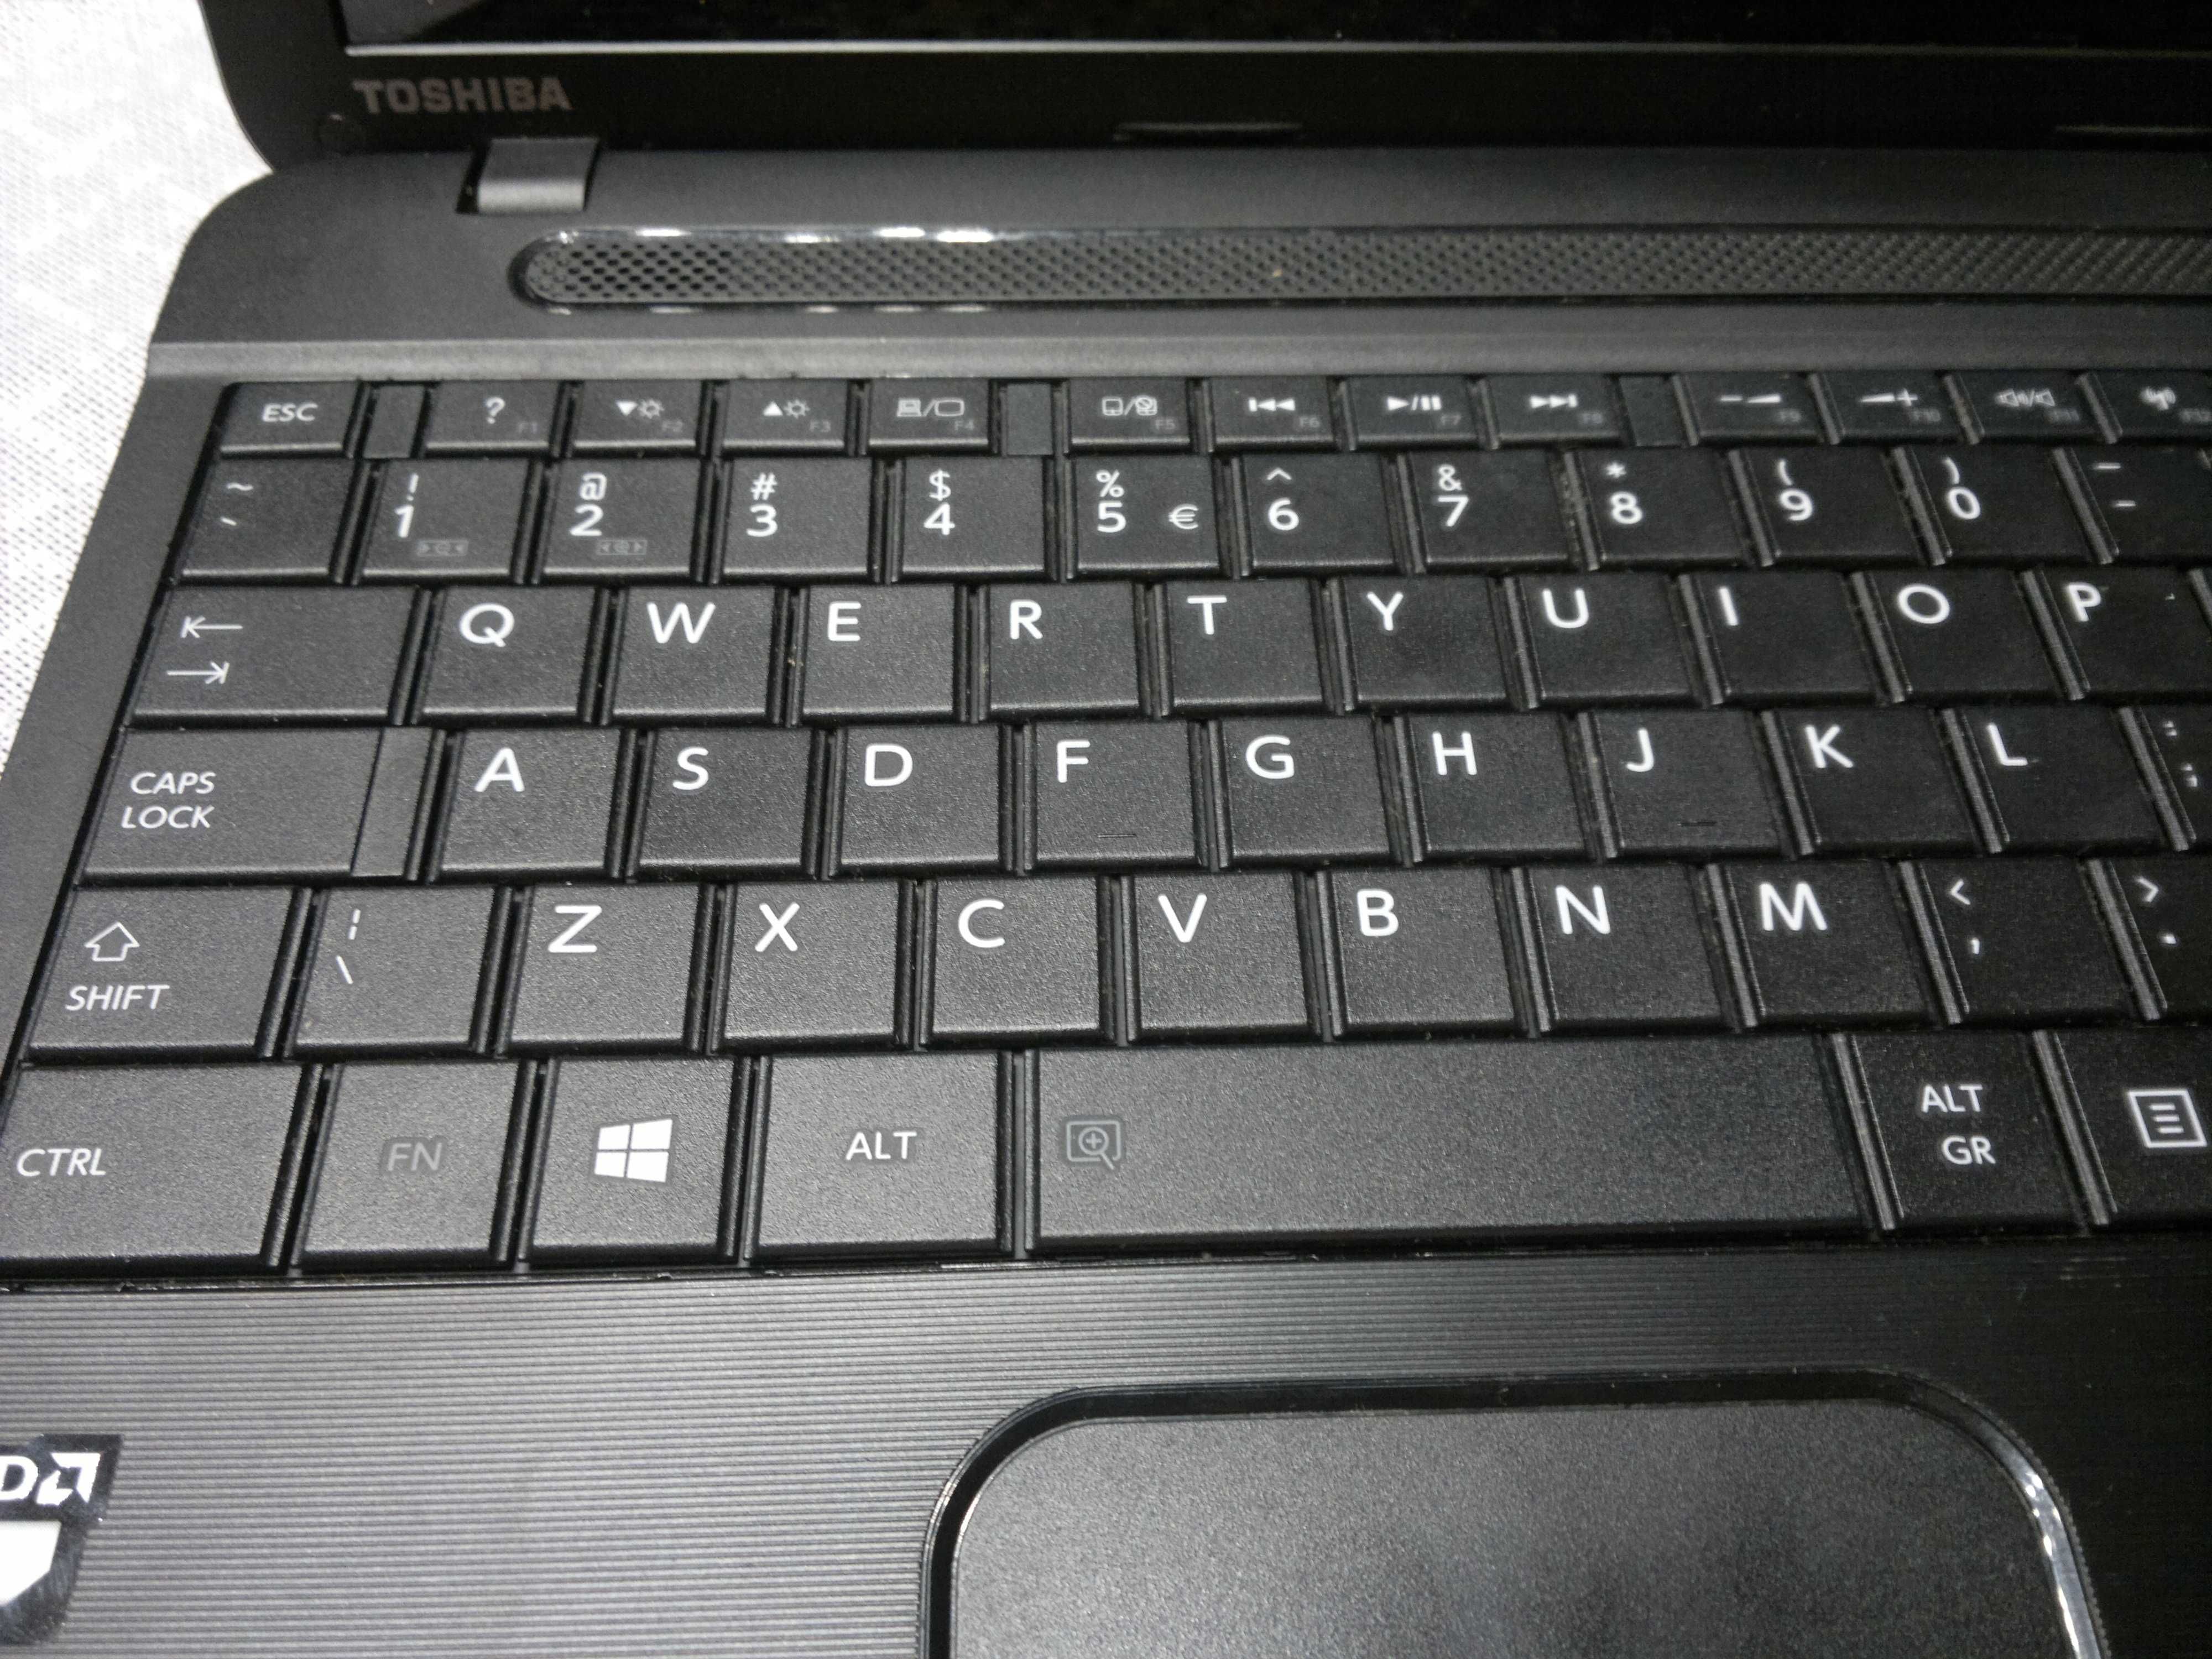 laptop toschiba c50d a139 500/4 15,6cala amd e2100